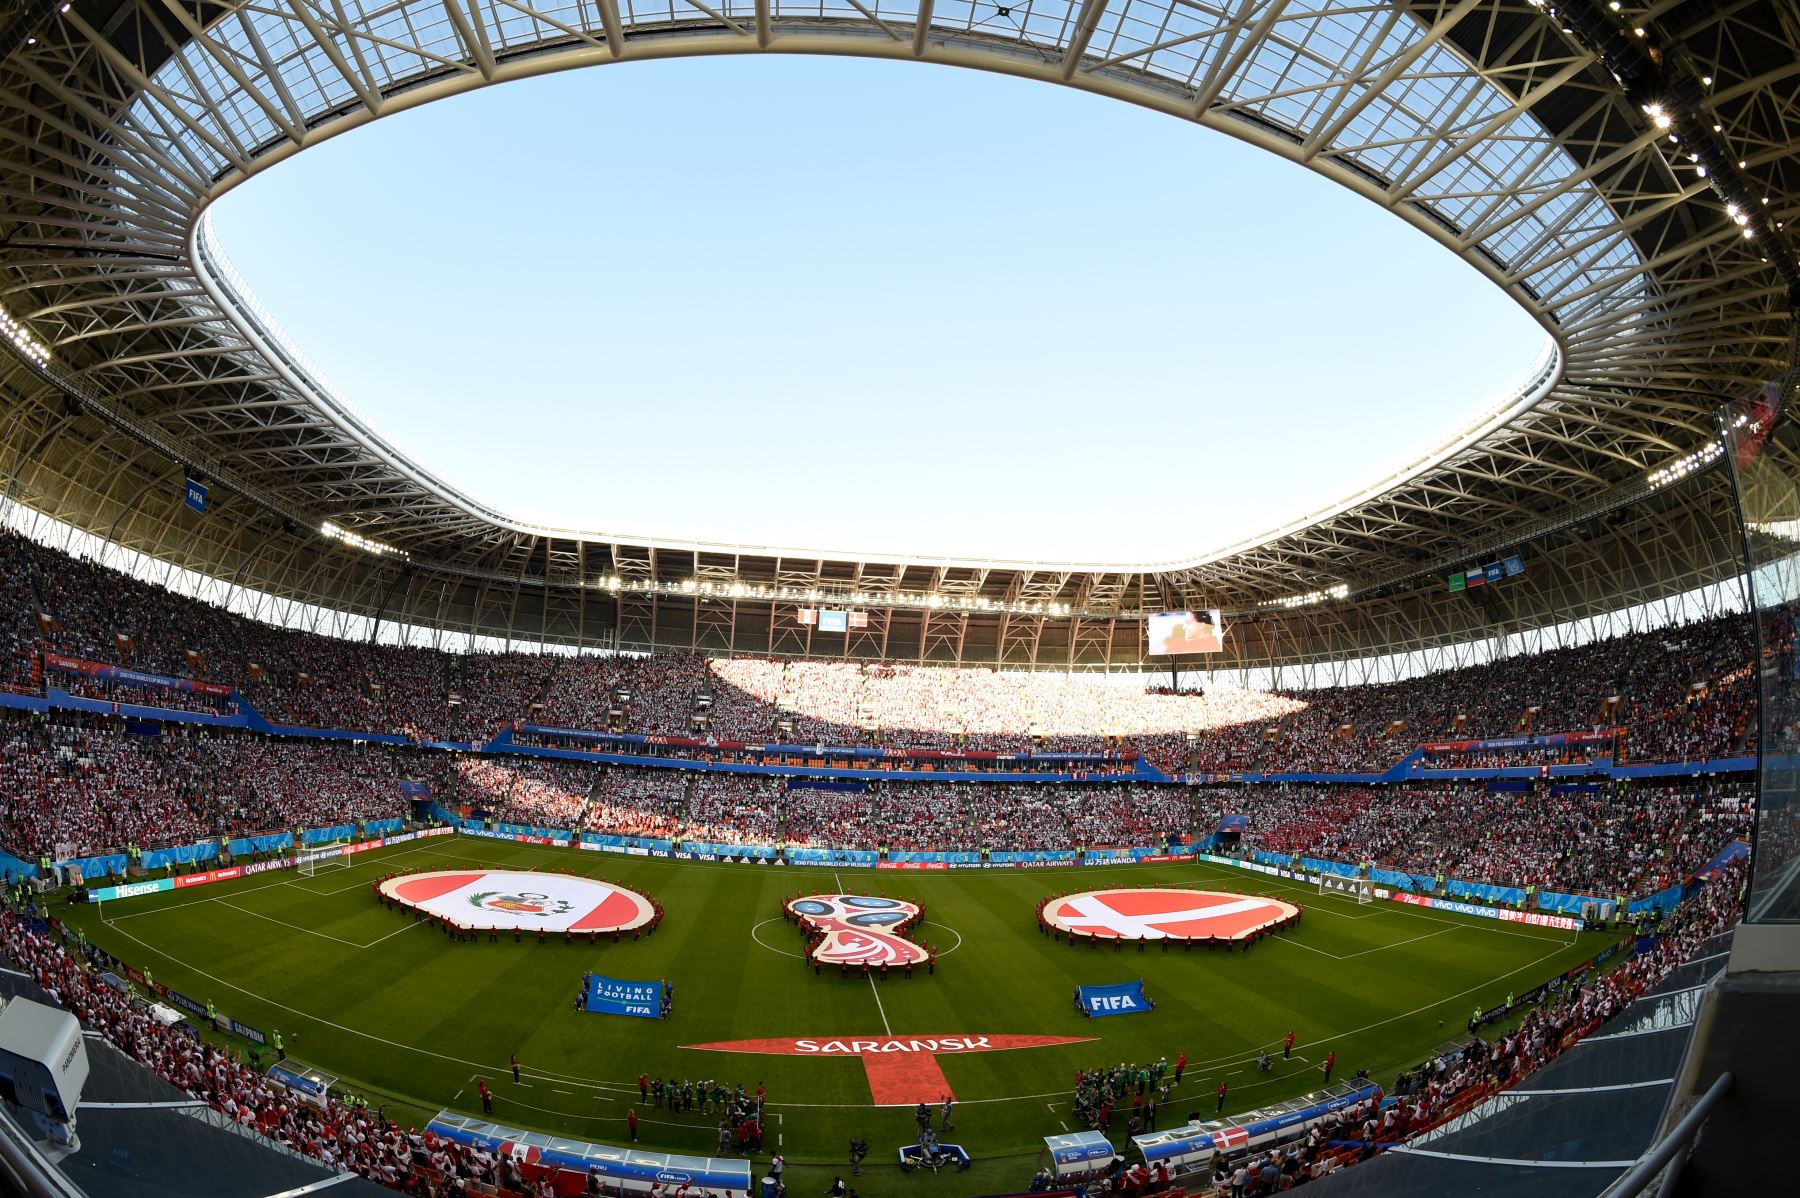 Los equipos se alinean para los himnos nacionales antes del inicio del partido de fútbol del Grupo C de la Copa Mundial Rusia 2018 entre Perú y Dinamarca en el Mordovia Arena en Saransk el 16 de junio de 2018.
Foto: AFP